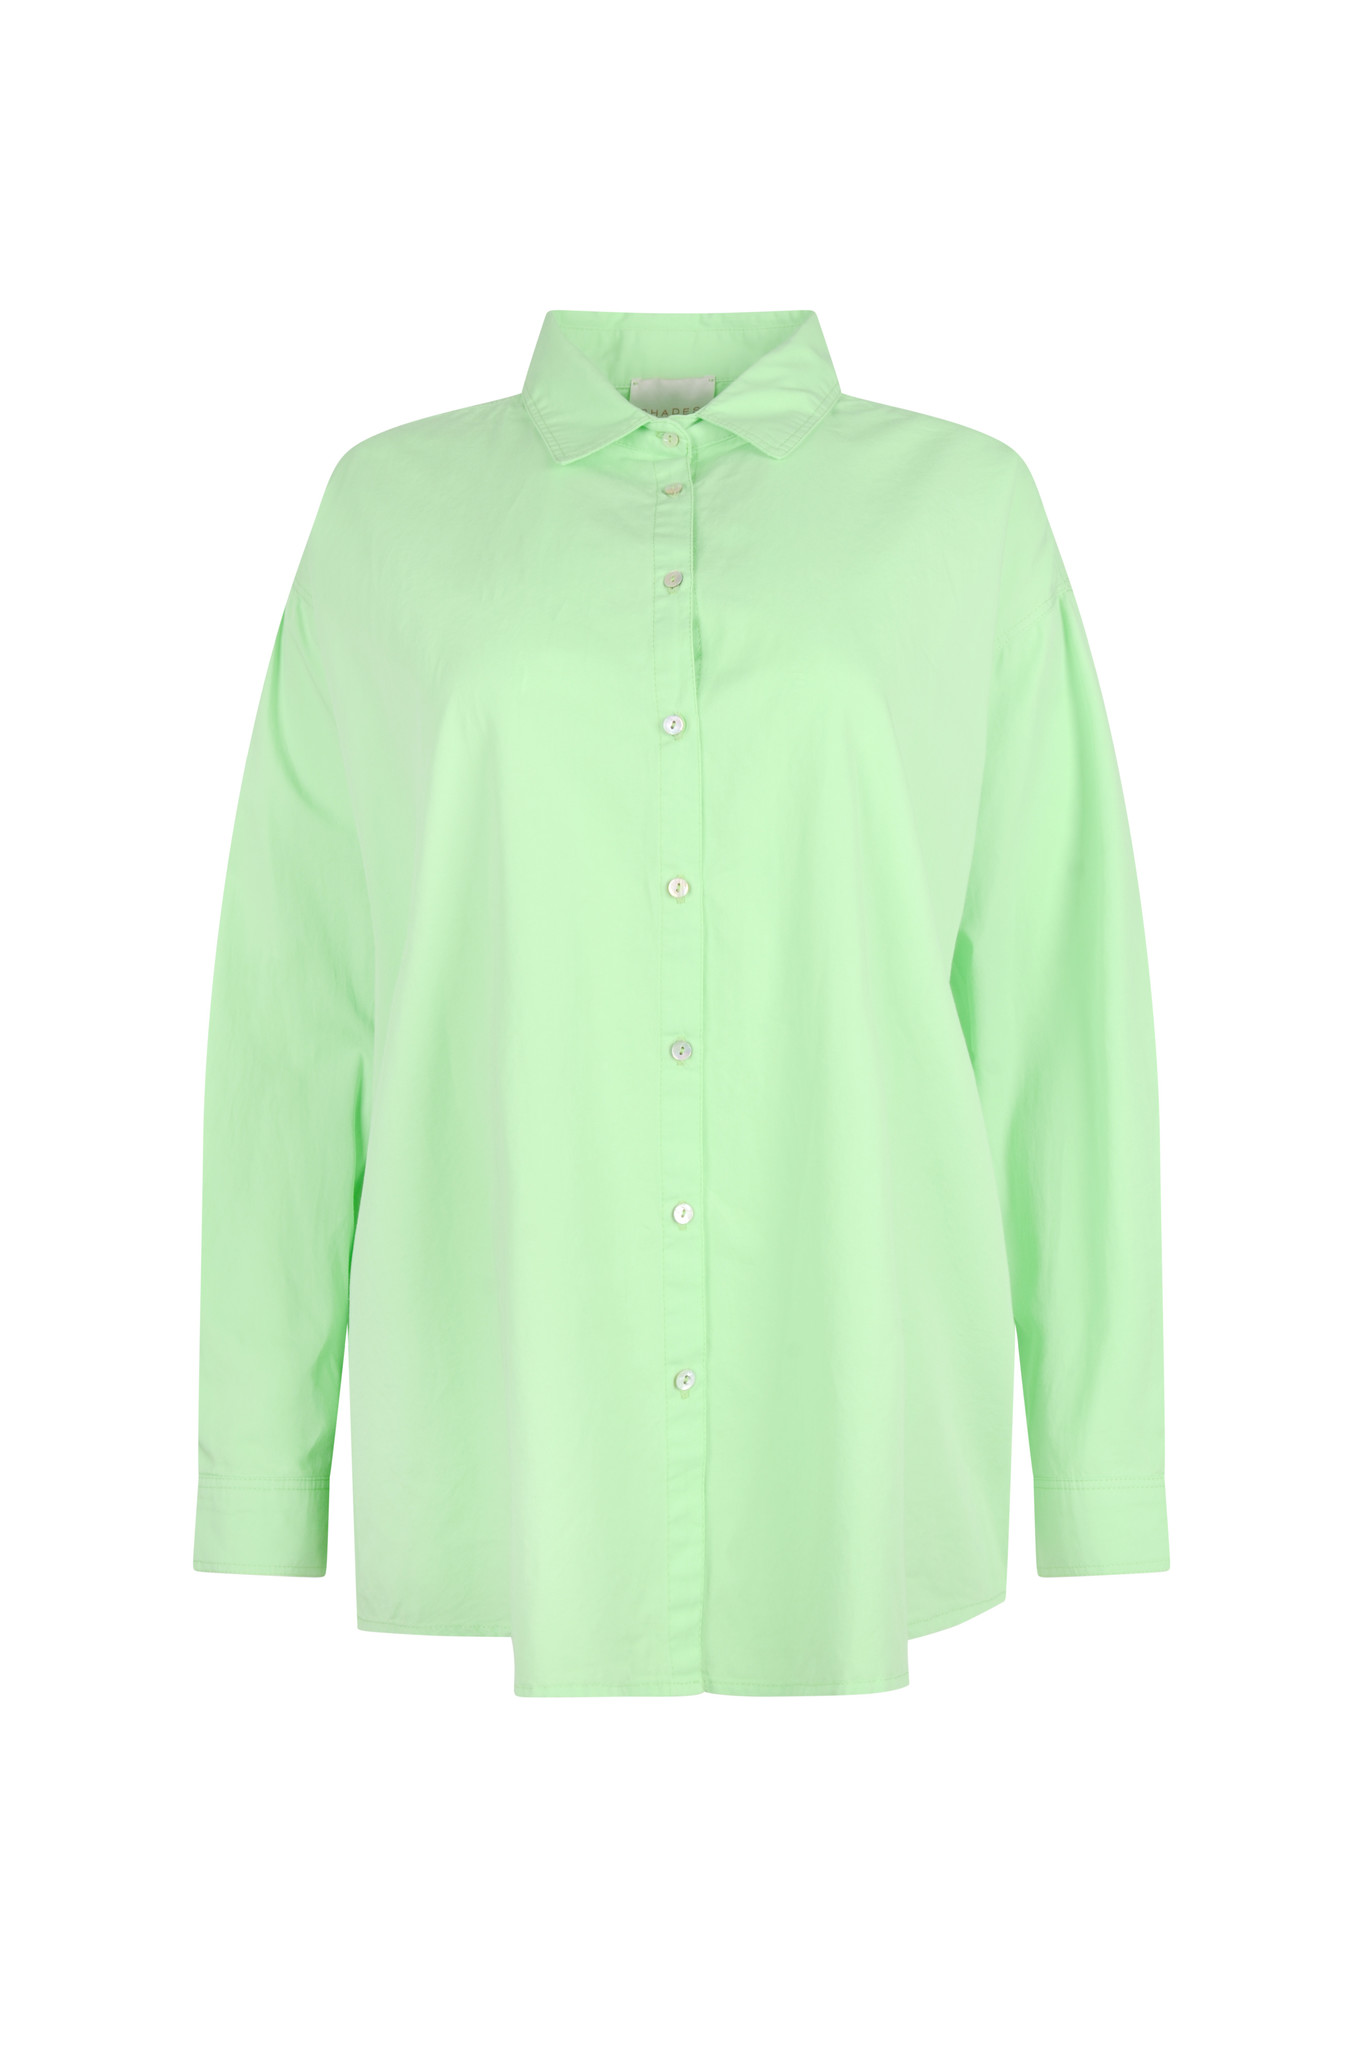 Maxou Shirt in Summer Green-1